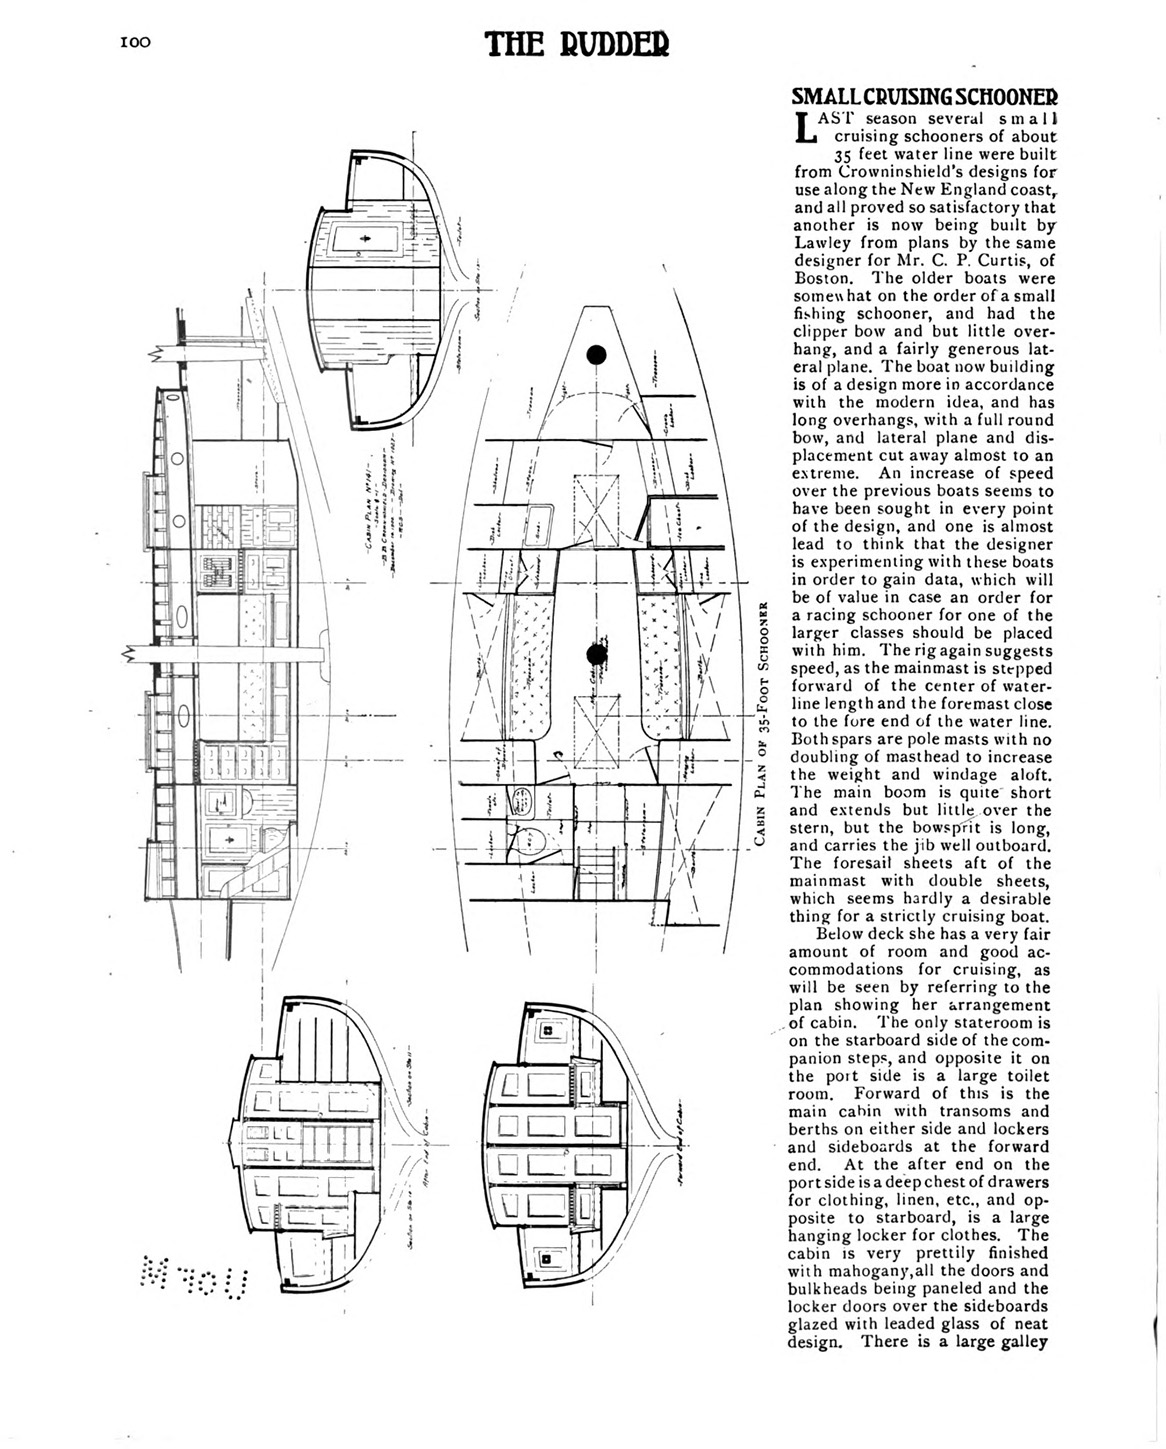 35-foot schooner_Page_2.jpg